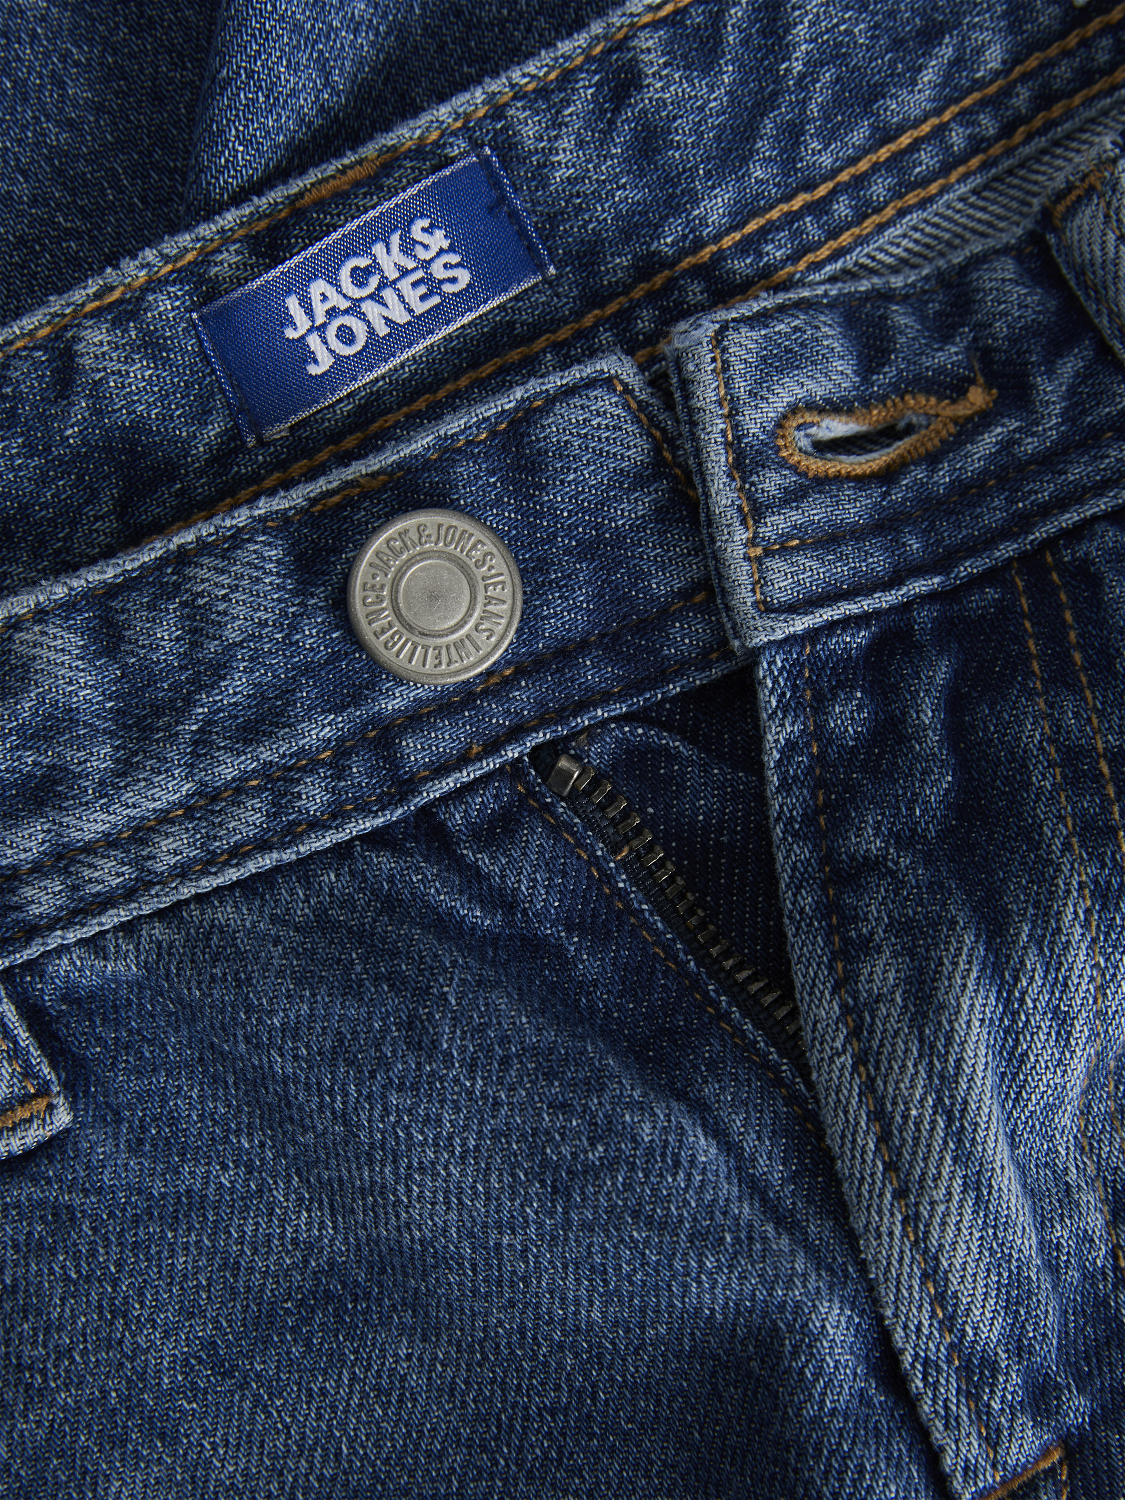 Jack & Jones JJICHRIS JJORIGINAL MF 755 Relaxed Fit Jeans For boys -Blue Denim - 12237676